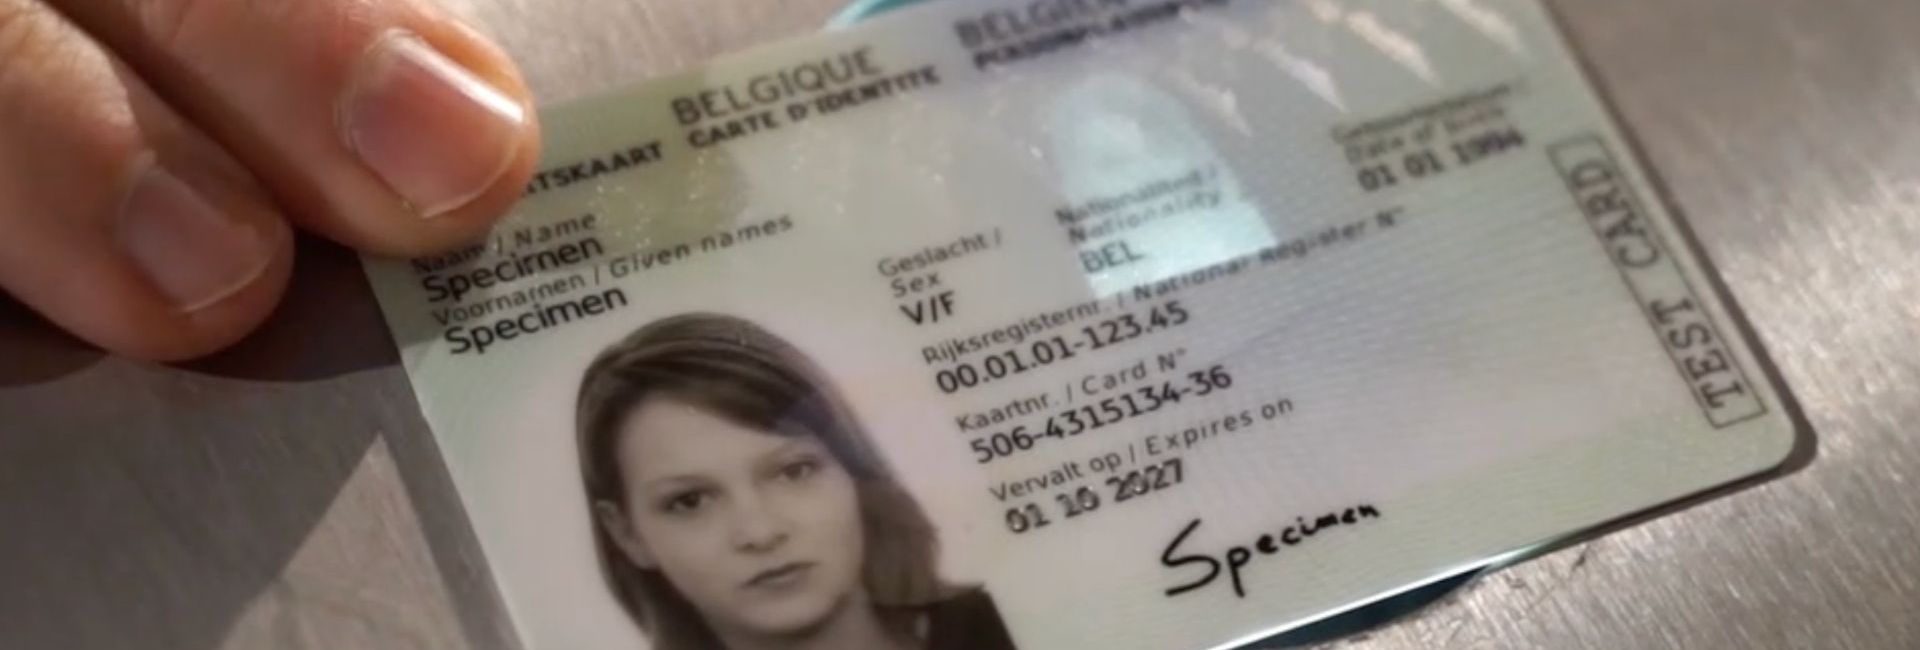 carte-identite-belgique-mention-du-genre